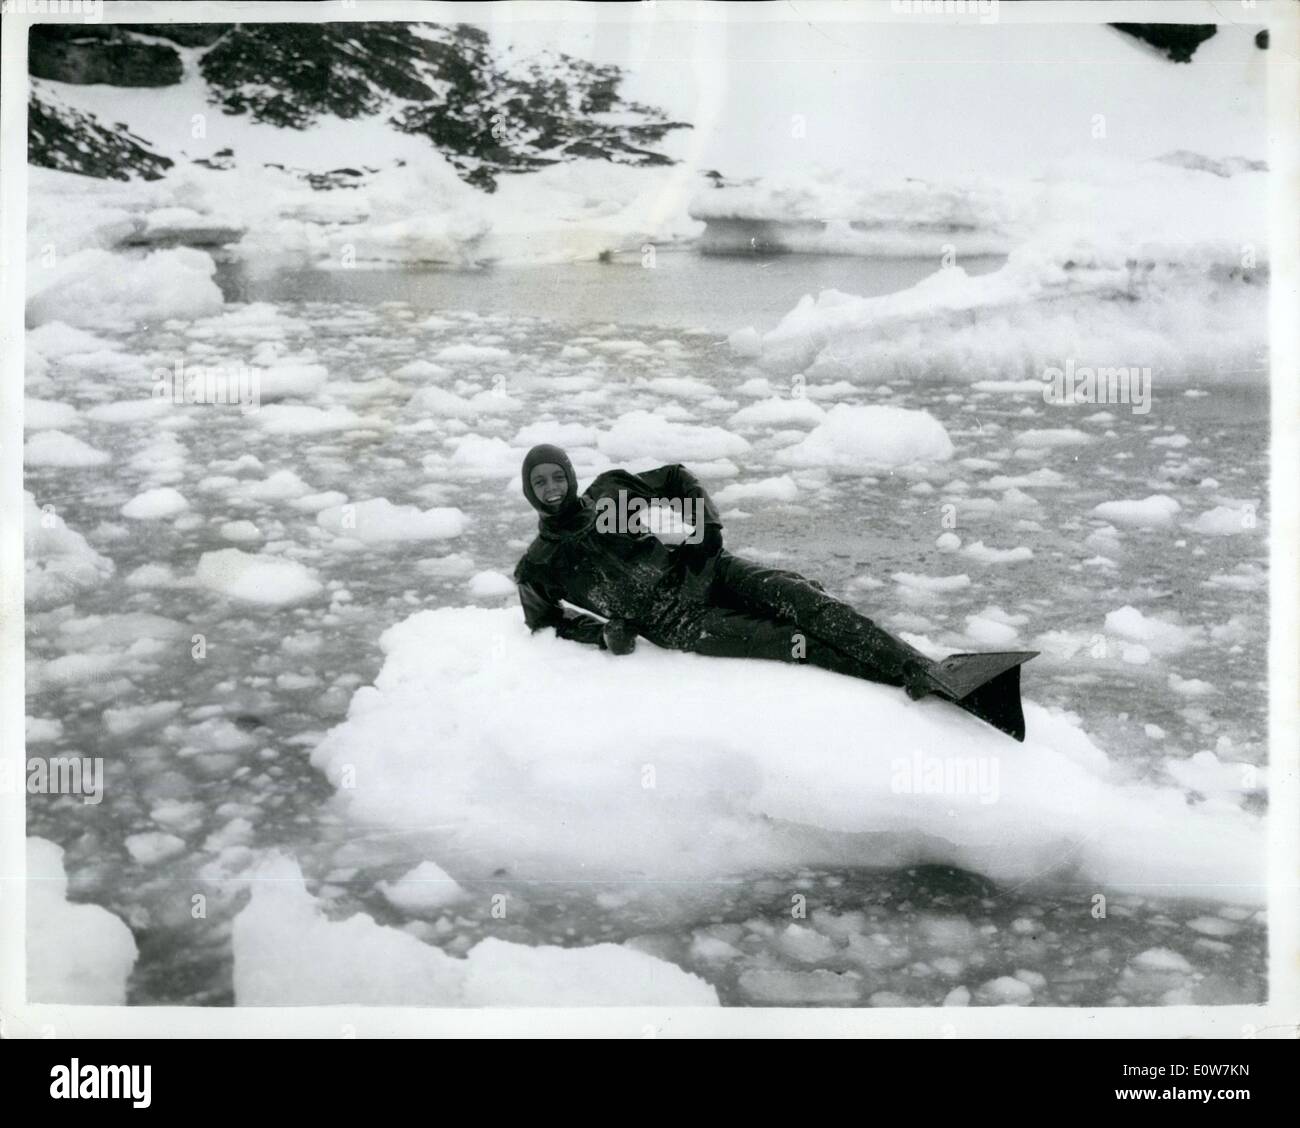 01 janvier, 1962 - La photo officielle : les plongeurs de la Marine royale dans l'Antarctique : Les fonctions si le HMS protecteur, la Royal Navy's ice-patrouilleur, l'air que ses plongeurs ont à opérer dans les flux de glace de l'Antarctique. L'équipe a récemment eu à plonger dans le détroit de Bransfield au cours d'essais cliniques pour seismeic l'Antarctique de l'hélice de l'Skackleton Roayl navire de recherche. Photo montre l'un des plongeurs protecteur teh, le matelot de David Williams, de Southsea prend une pause sur une glace à l'écoulement de l'eau pendant les opérations de plongée dans l'Antarctique. Banque D'Images